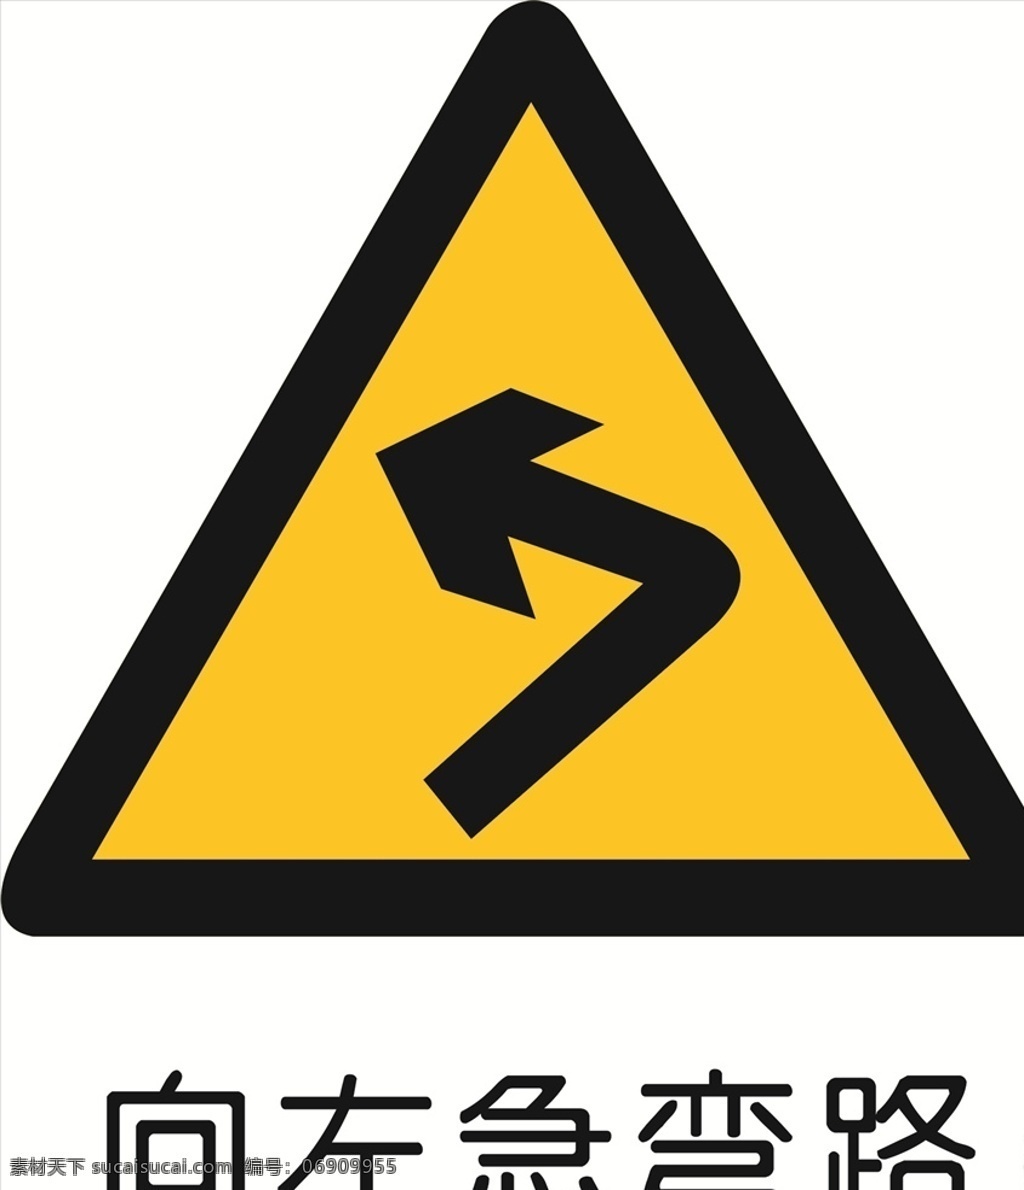 向左转急弯 指示标志 交通标志 标志 交通 展板 标志图标 公共标识标志